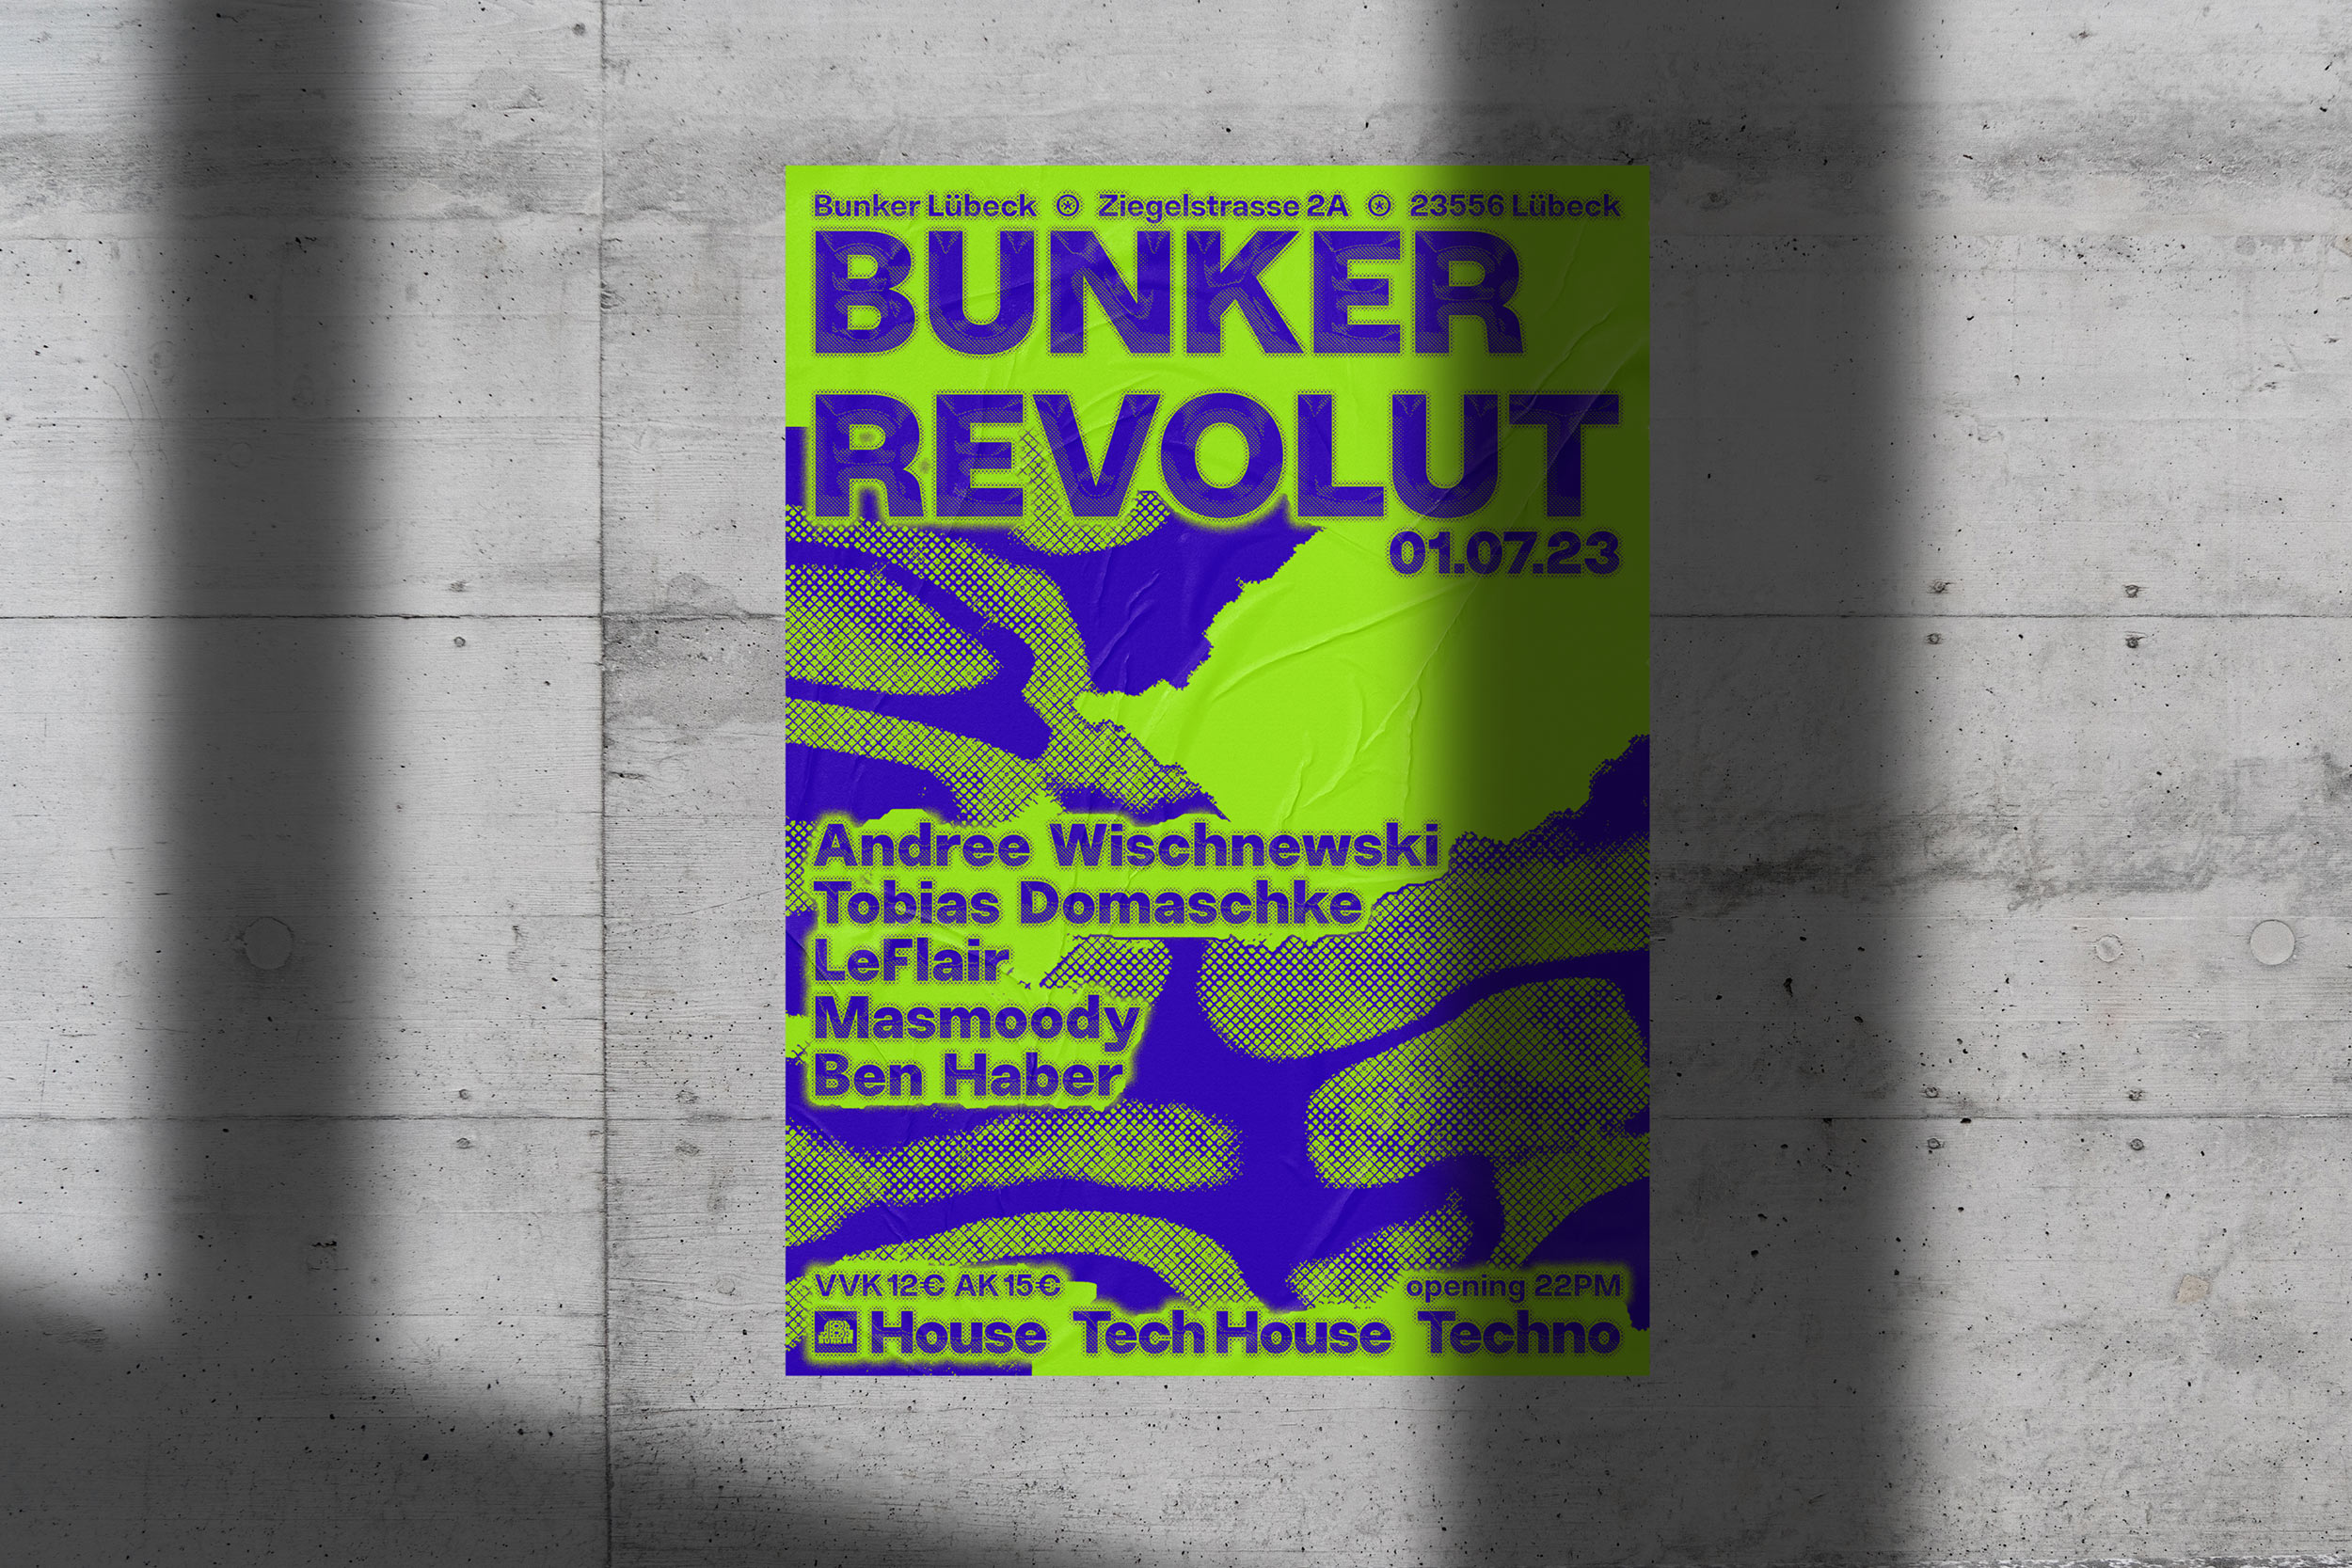 Bunker-Revolut_Techno-Poster-by-Sarah-Stendel